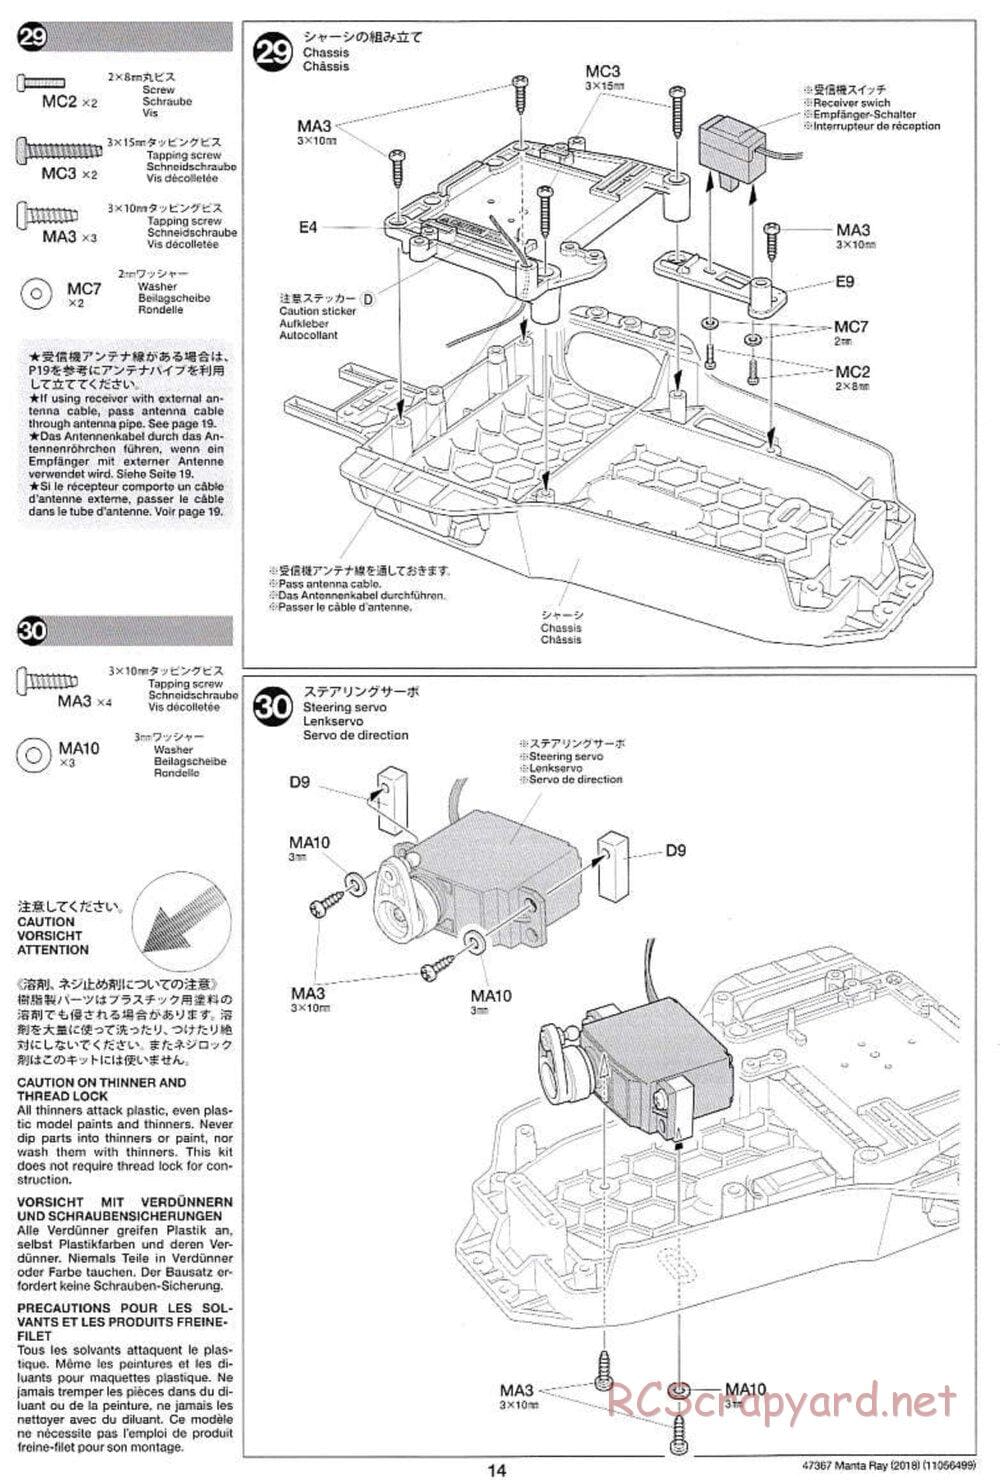 Tamiya - Manta Ray 2018 - DF-01 Chassis - Manual - Page 14